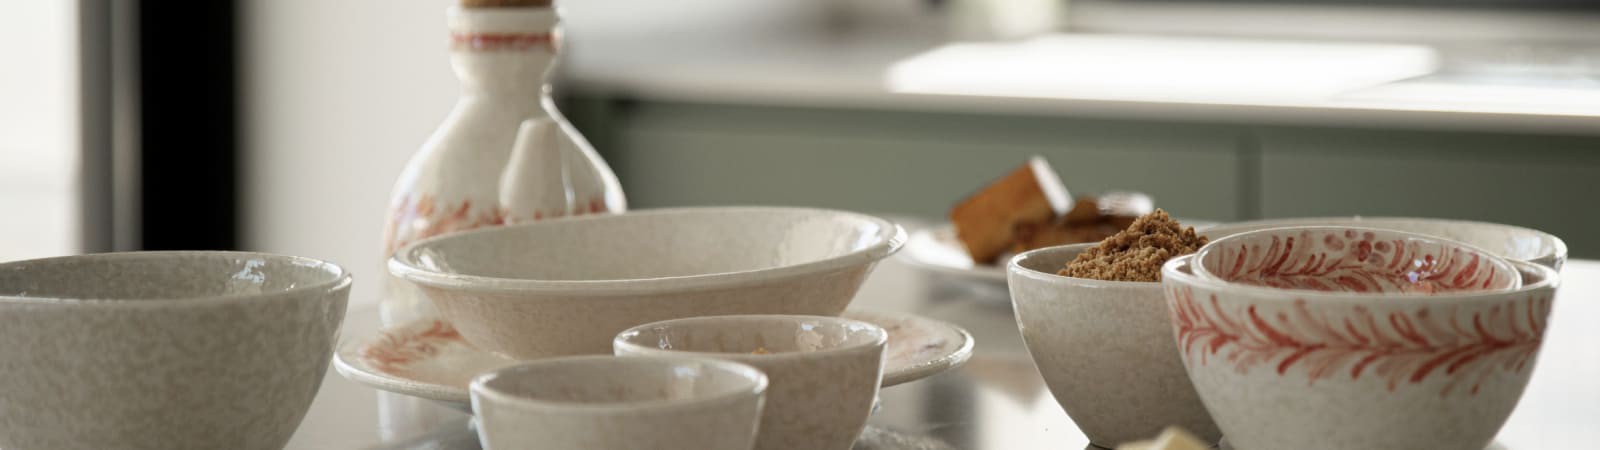 Vajilla de cerámica artesanal [Venta Online] - Ivanros